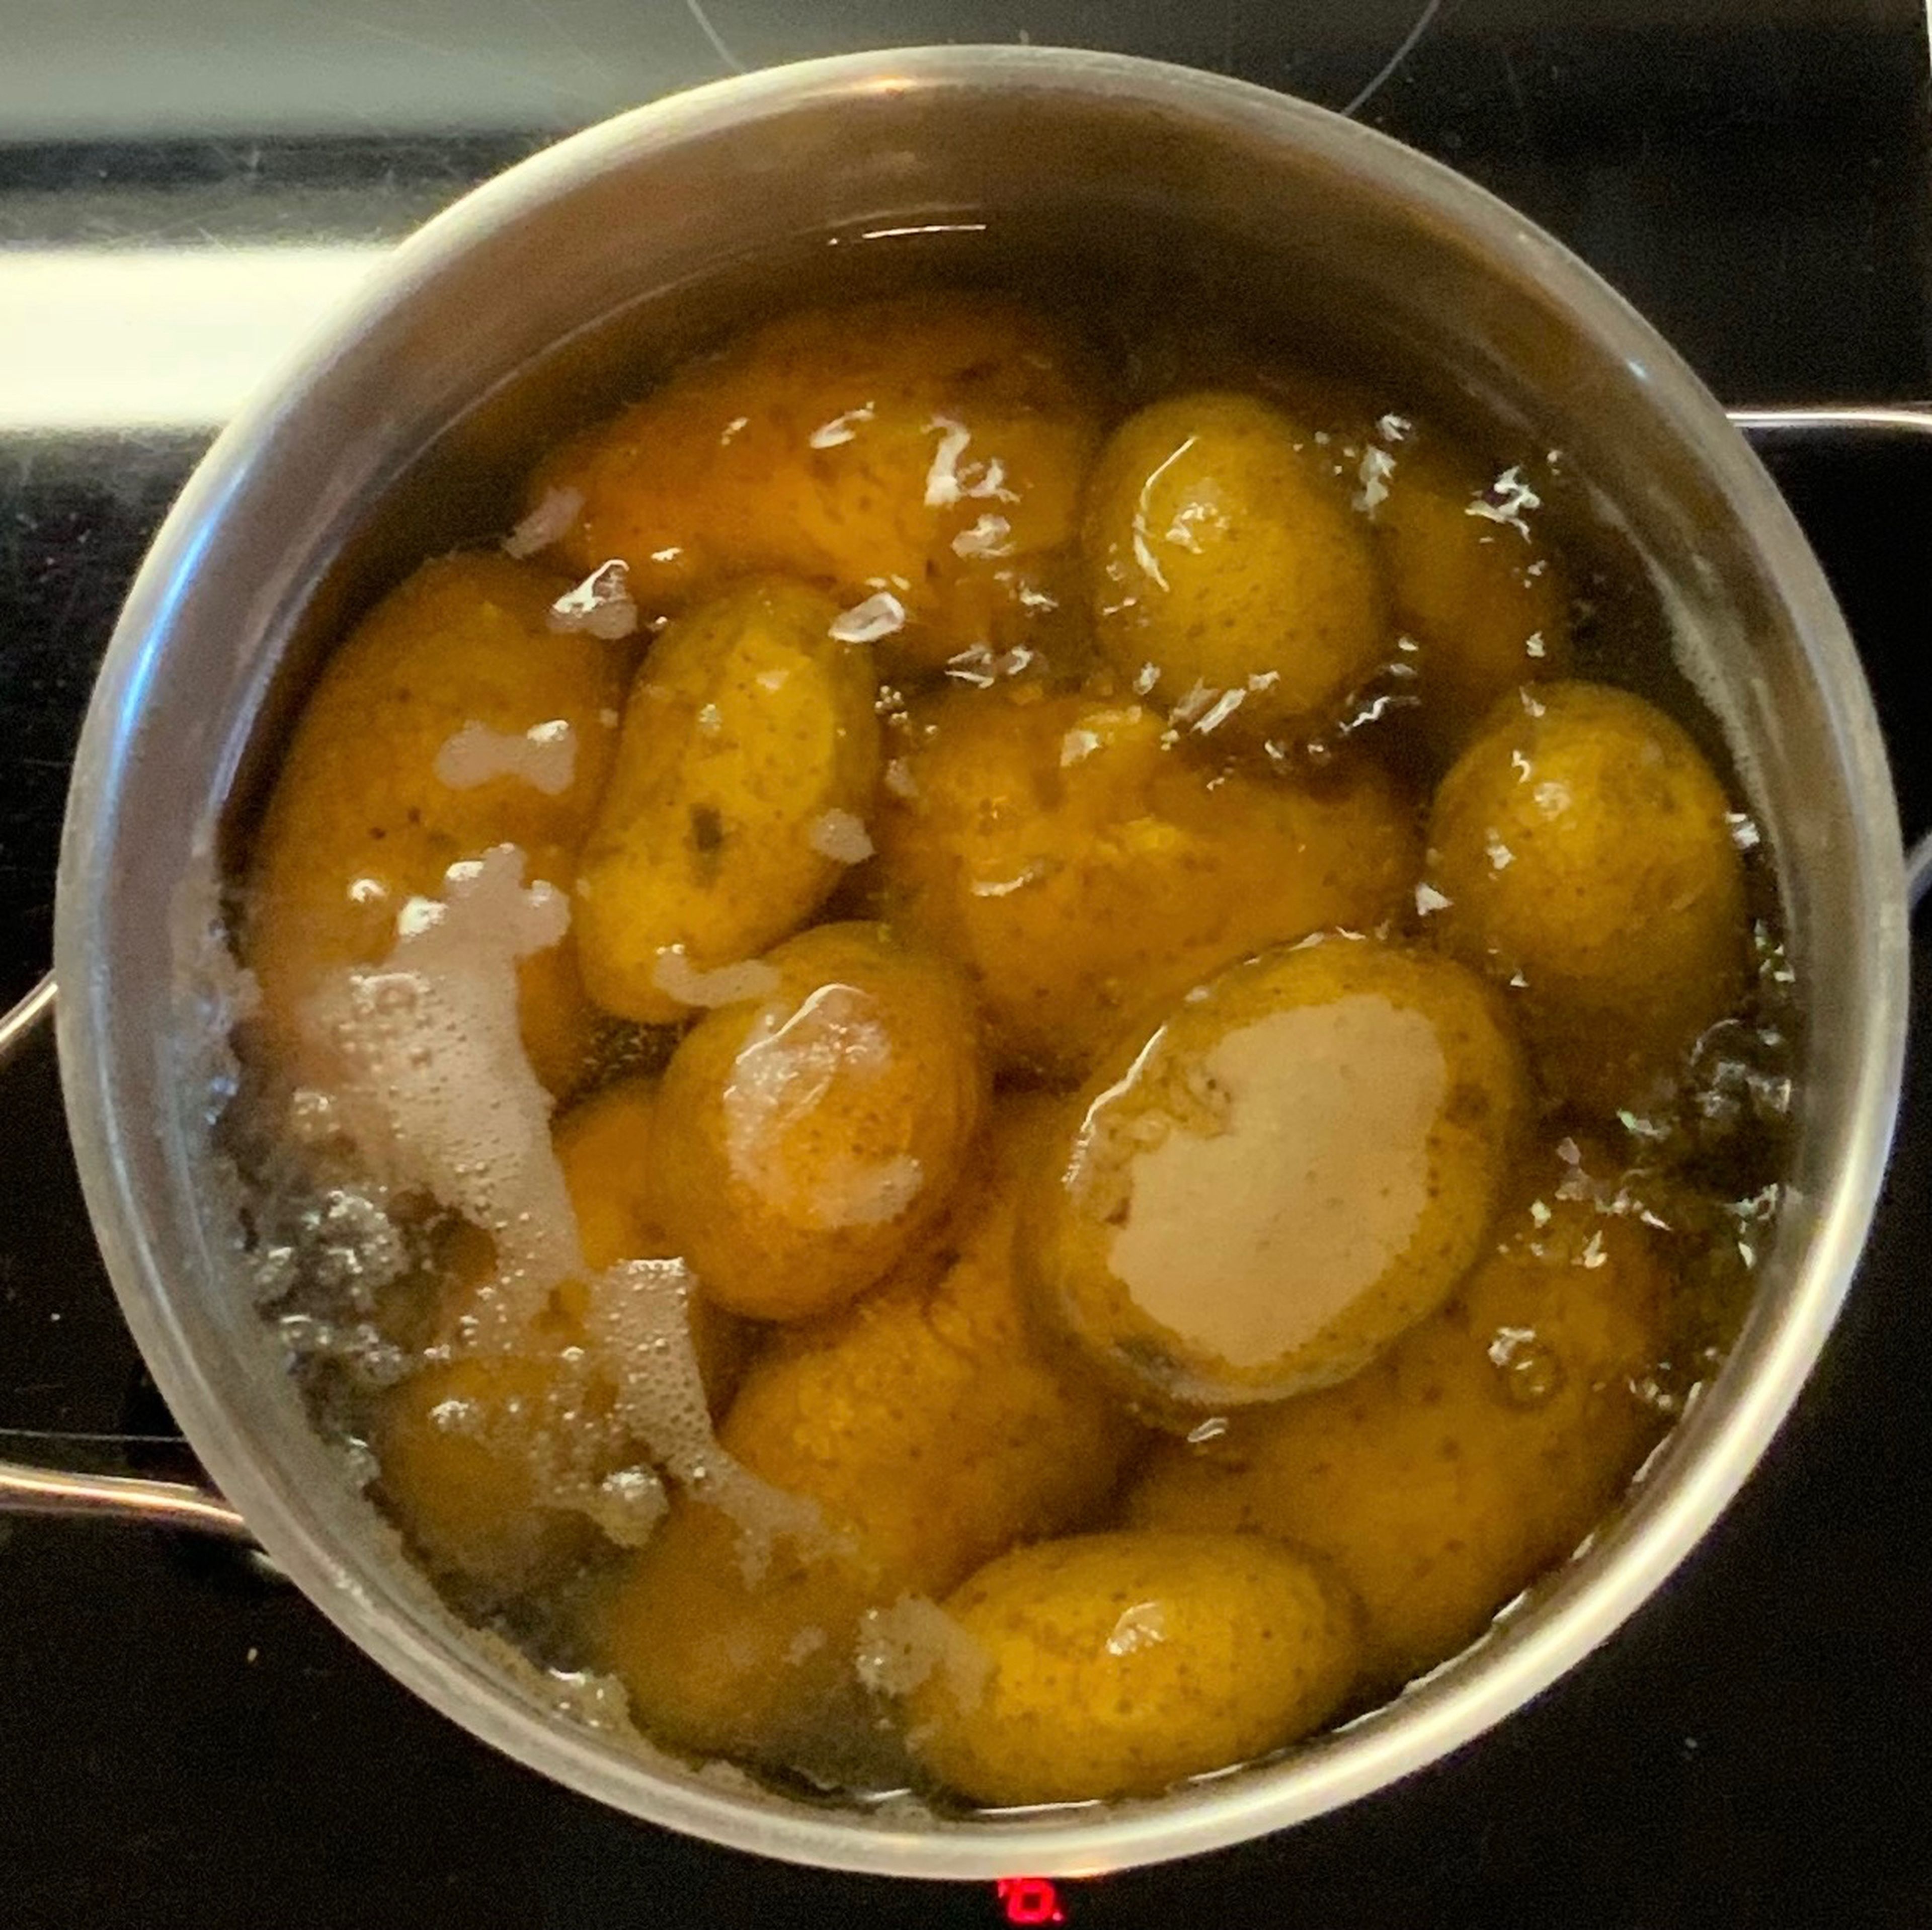 Kartoffeln gründlich waschen. In einem Topf mit etwas Salz und dem Kümmelsamen garen. Danach heiß pellen und abkühlen lassen. Dann in Scheiben schneiden.